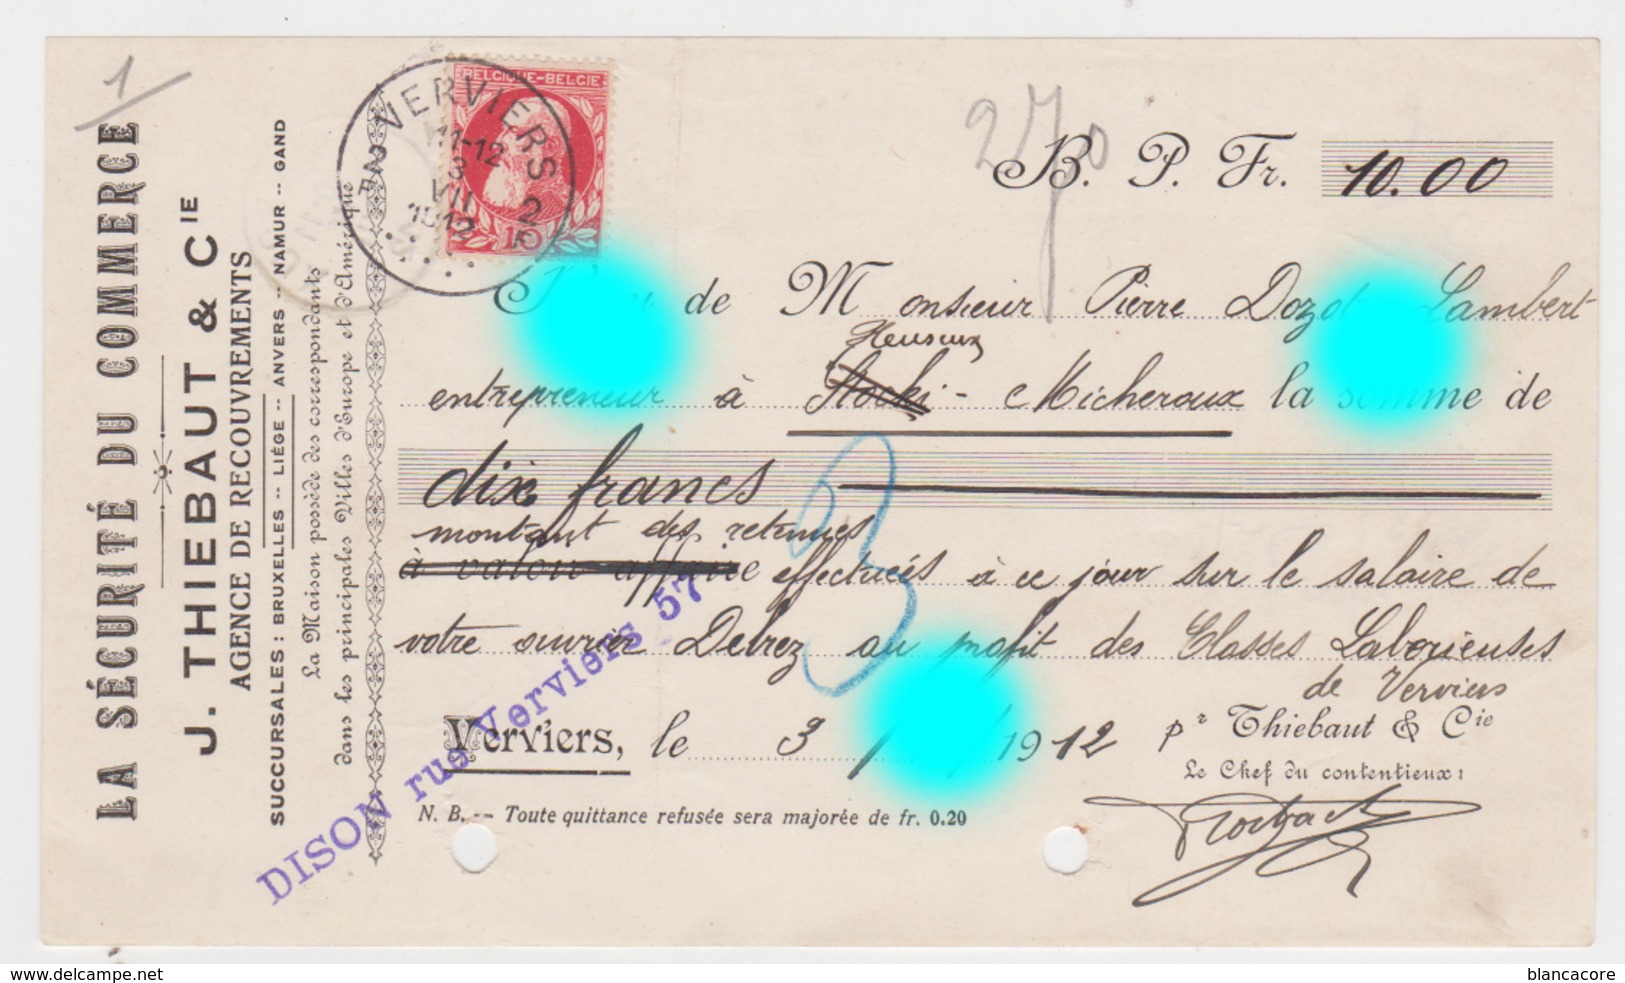 Verviers Thiebaut En 1912 Retenues Sur Salaire De Delrez Ouvrier Chez Dozot Entrepreneur à Cerexhe Heuseux - Lettres De Change